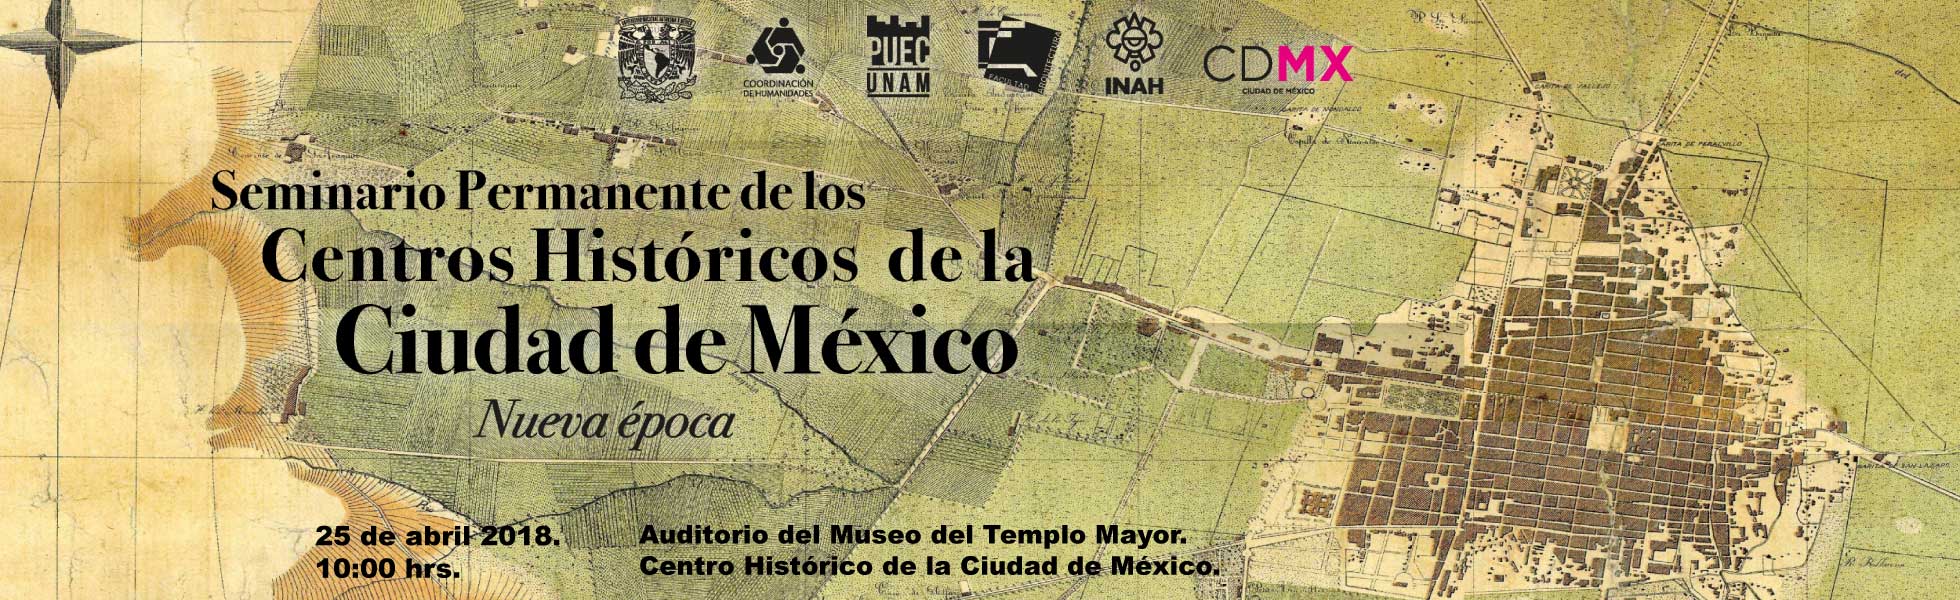 Seminario Permanente de los Centros Históricos de la Ciudad de México